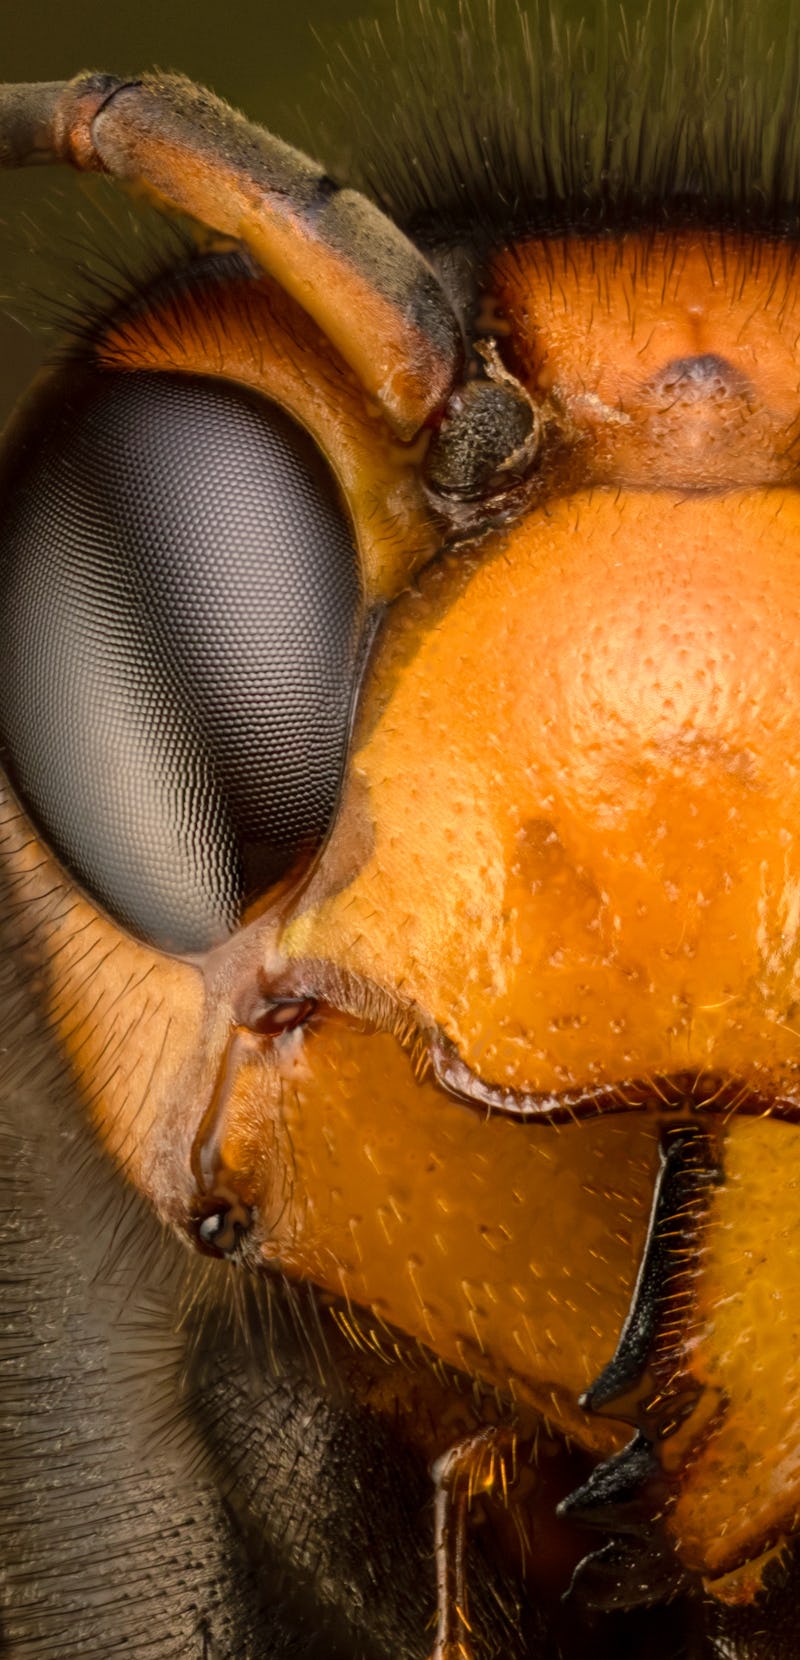 Head of an Asian giant hornet